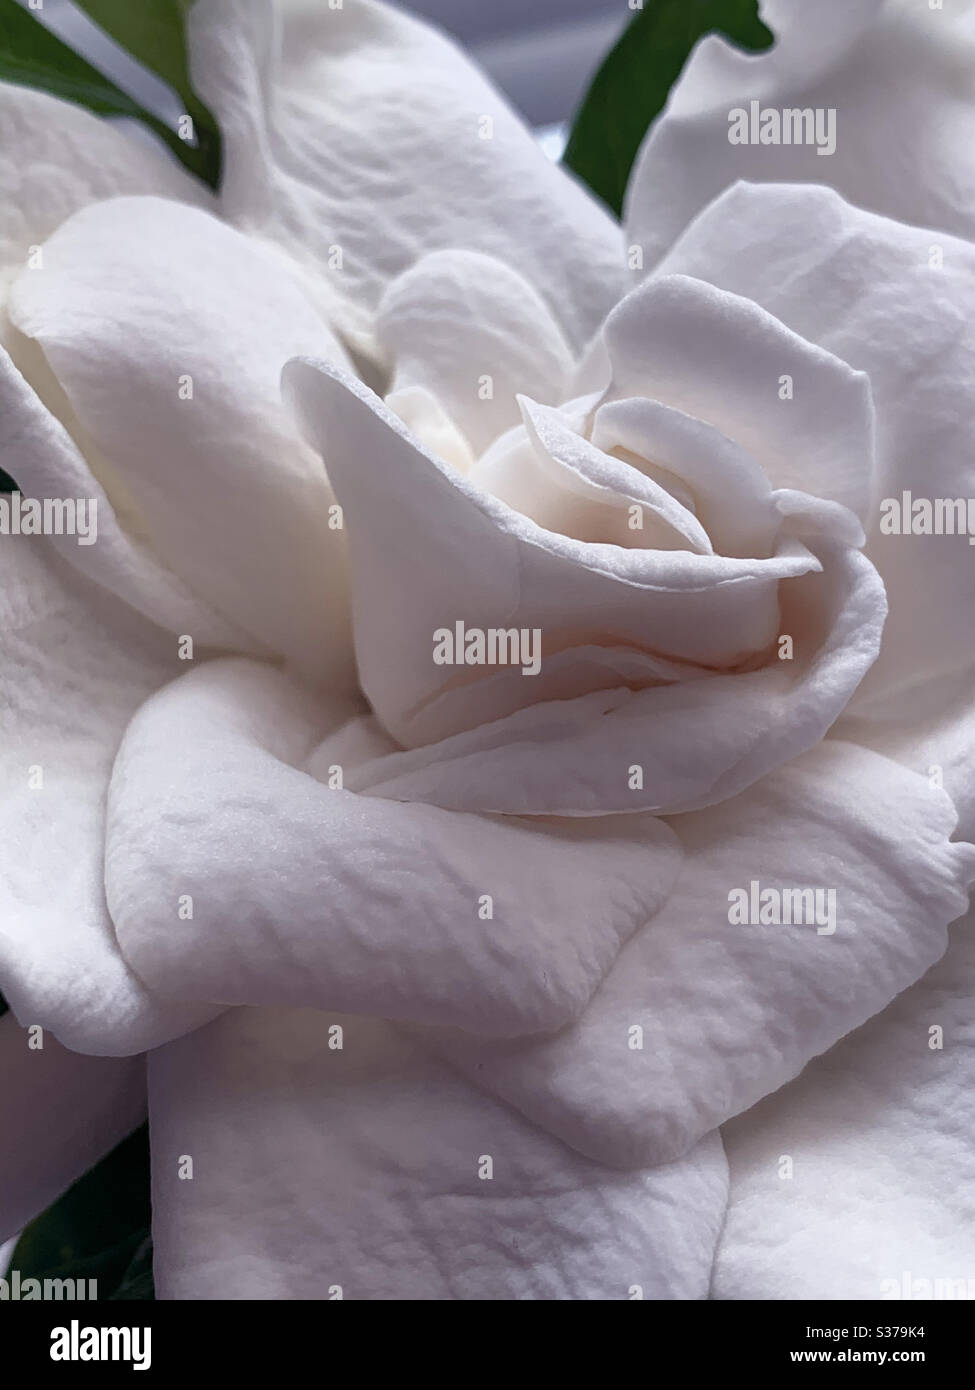 Macro di Gardenia bianca cremosa con petali che assomiglia a pergamena ruvida Foto Stock